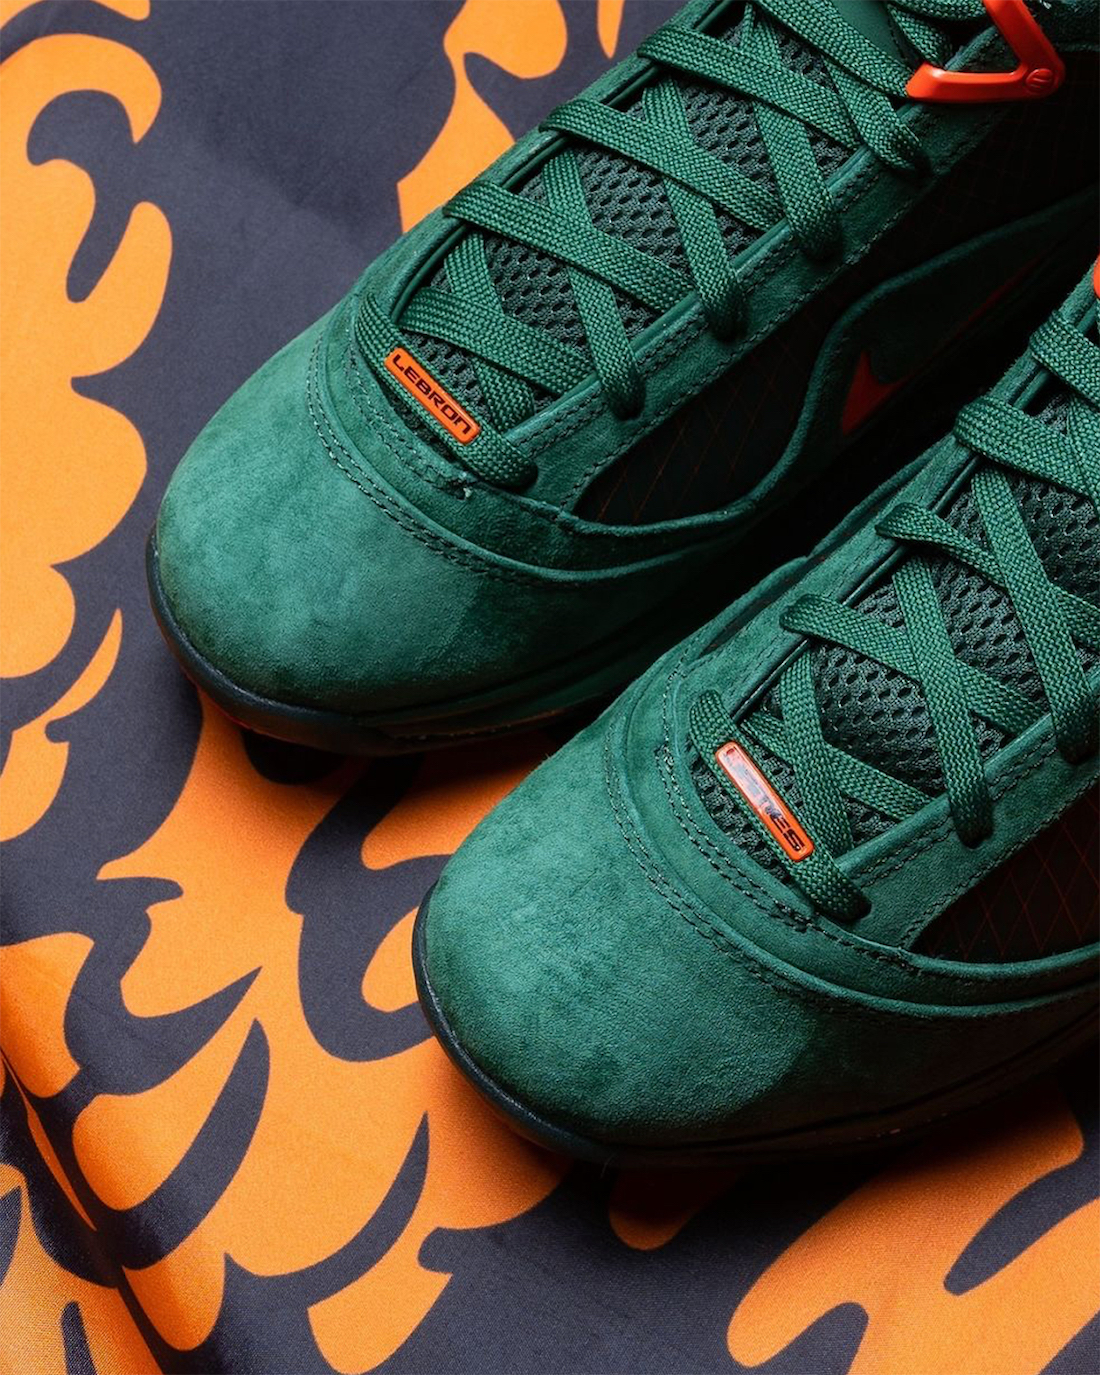 Nike LeBron 7 FAMU Gorge Green DX8554-300 Release Date Toe